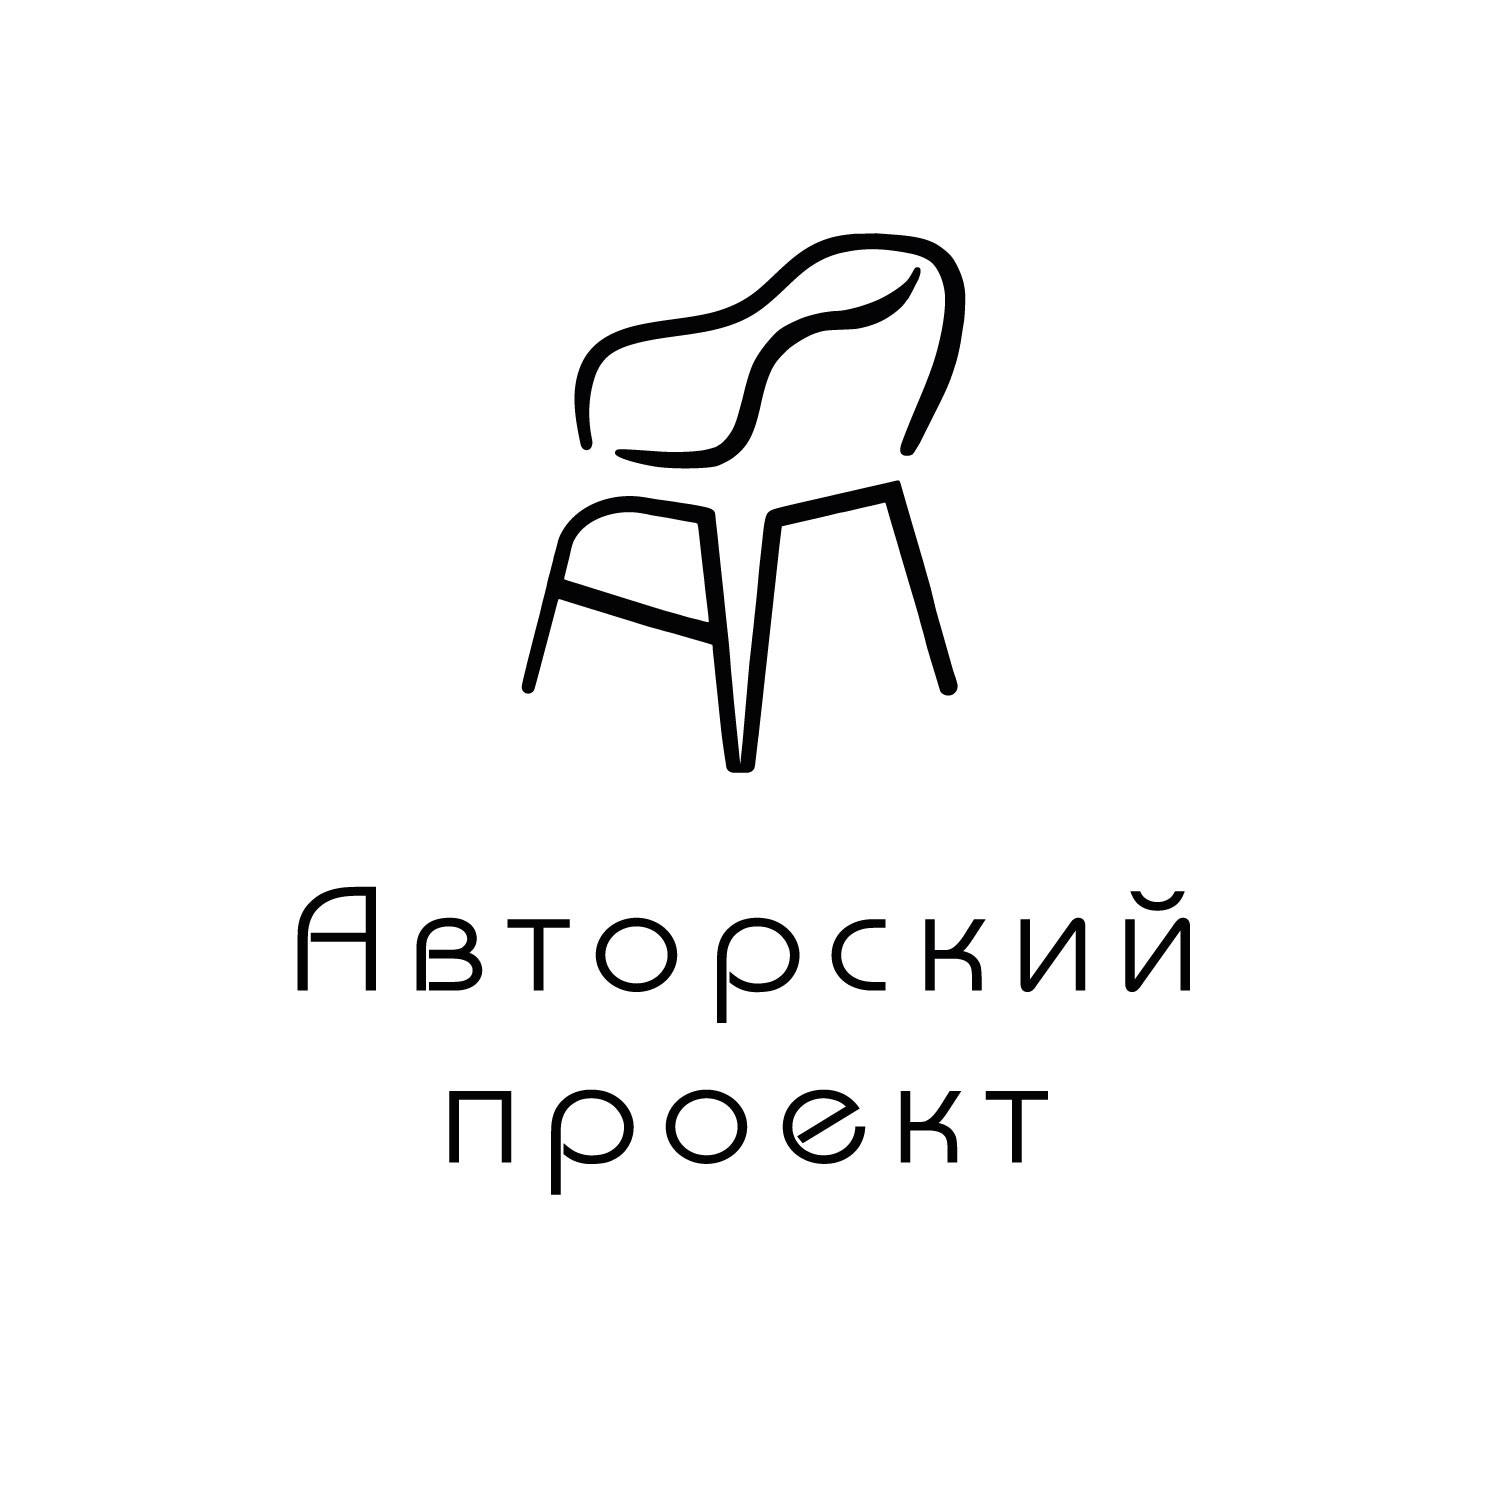 Логотип для мебельного производства